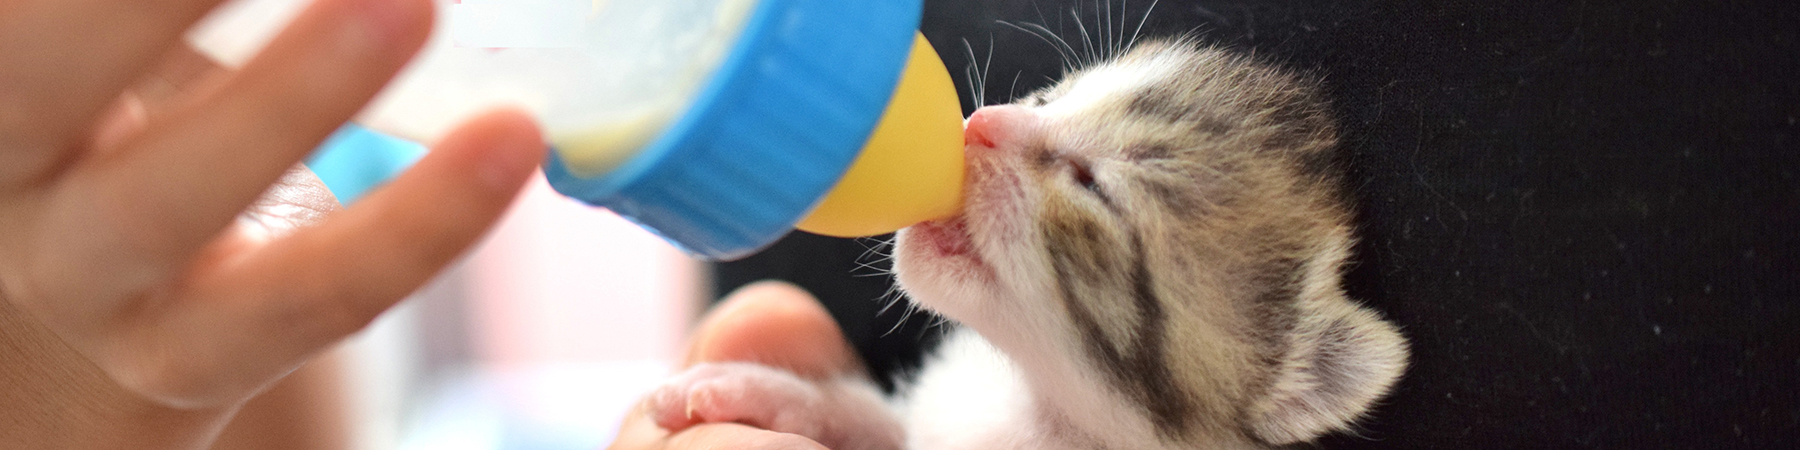 日本生活環境支援協会 | 猫の育て方アドバイザー認定試験